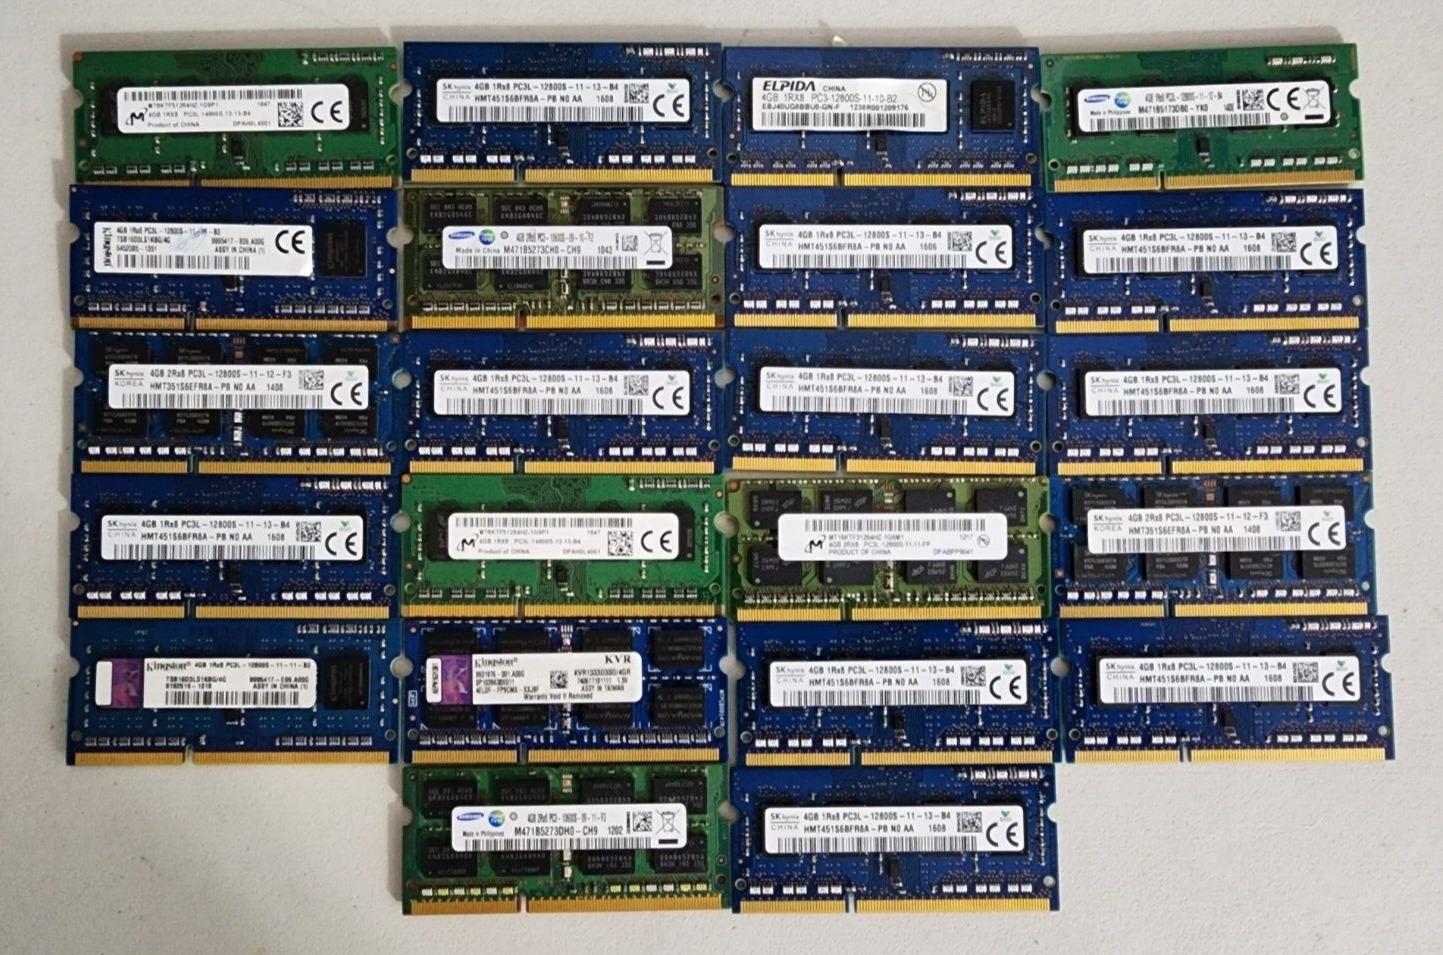 Lot of 22 Pcs 4Gb (22x 4GB = 88GB) Assorted DDR3 Laptop Ram Modules